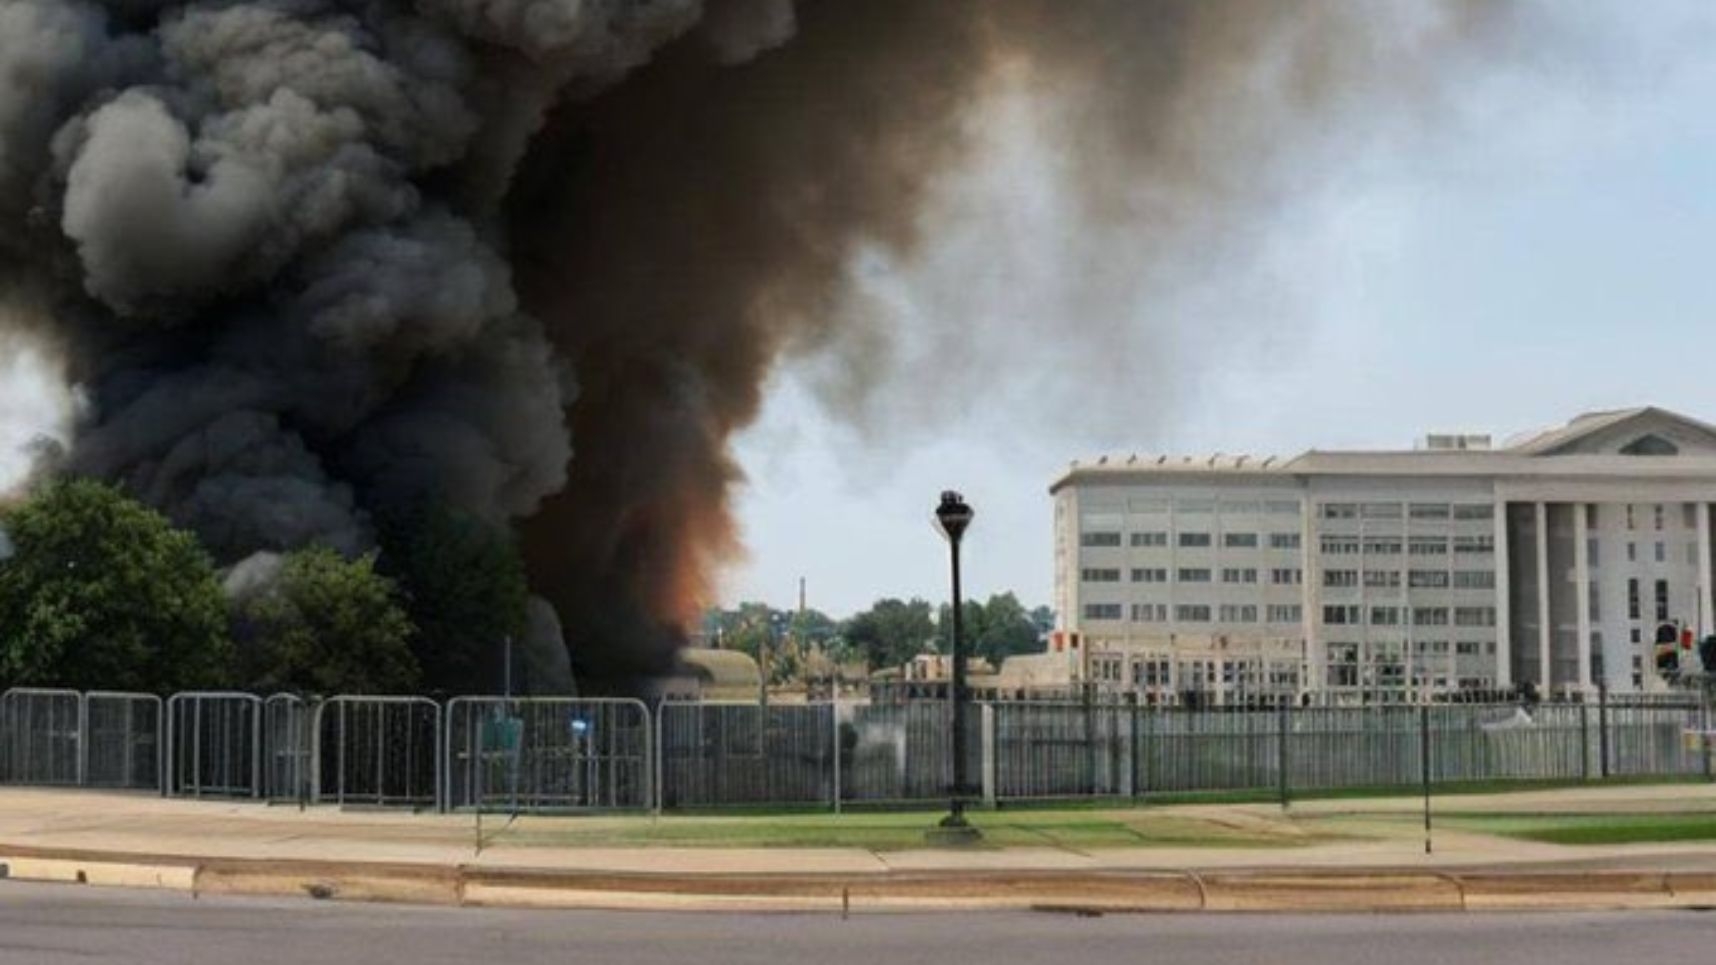 미국 국방부 청사인 펜타곤이 검은 연기를 내뿜으며 화재에 불타는 모습으로 생성형 인공지능(AI)이 만들어 낸 딥페이크 사진이 지난해 5월 소셜미디어(SNS)에 퍼졌다.